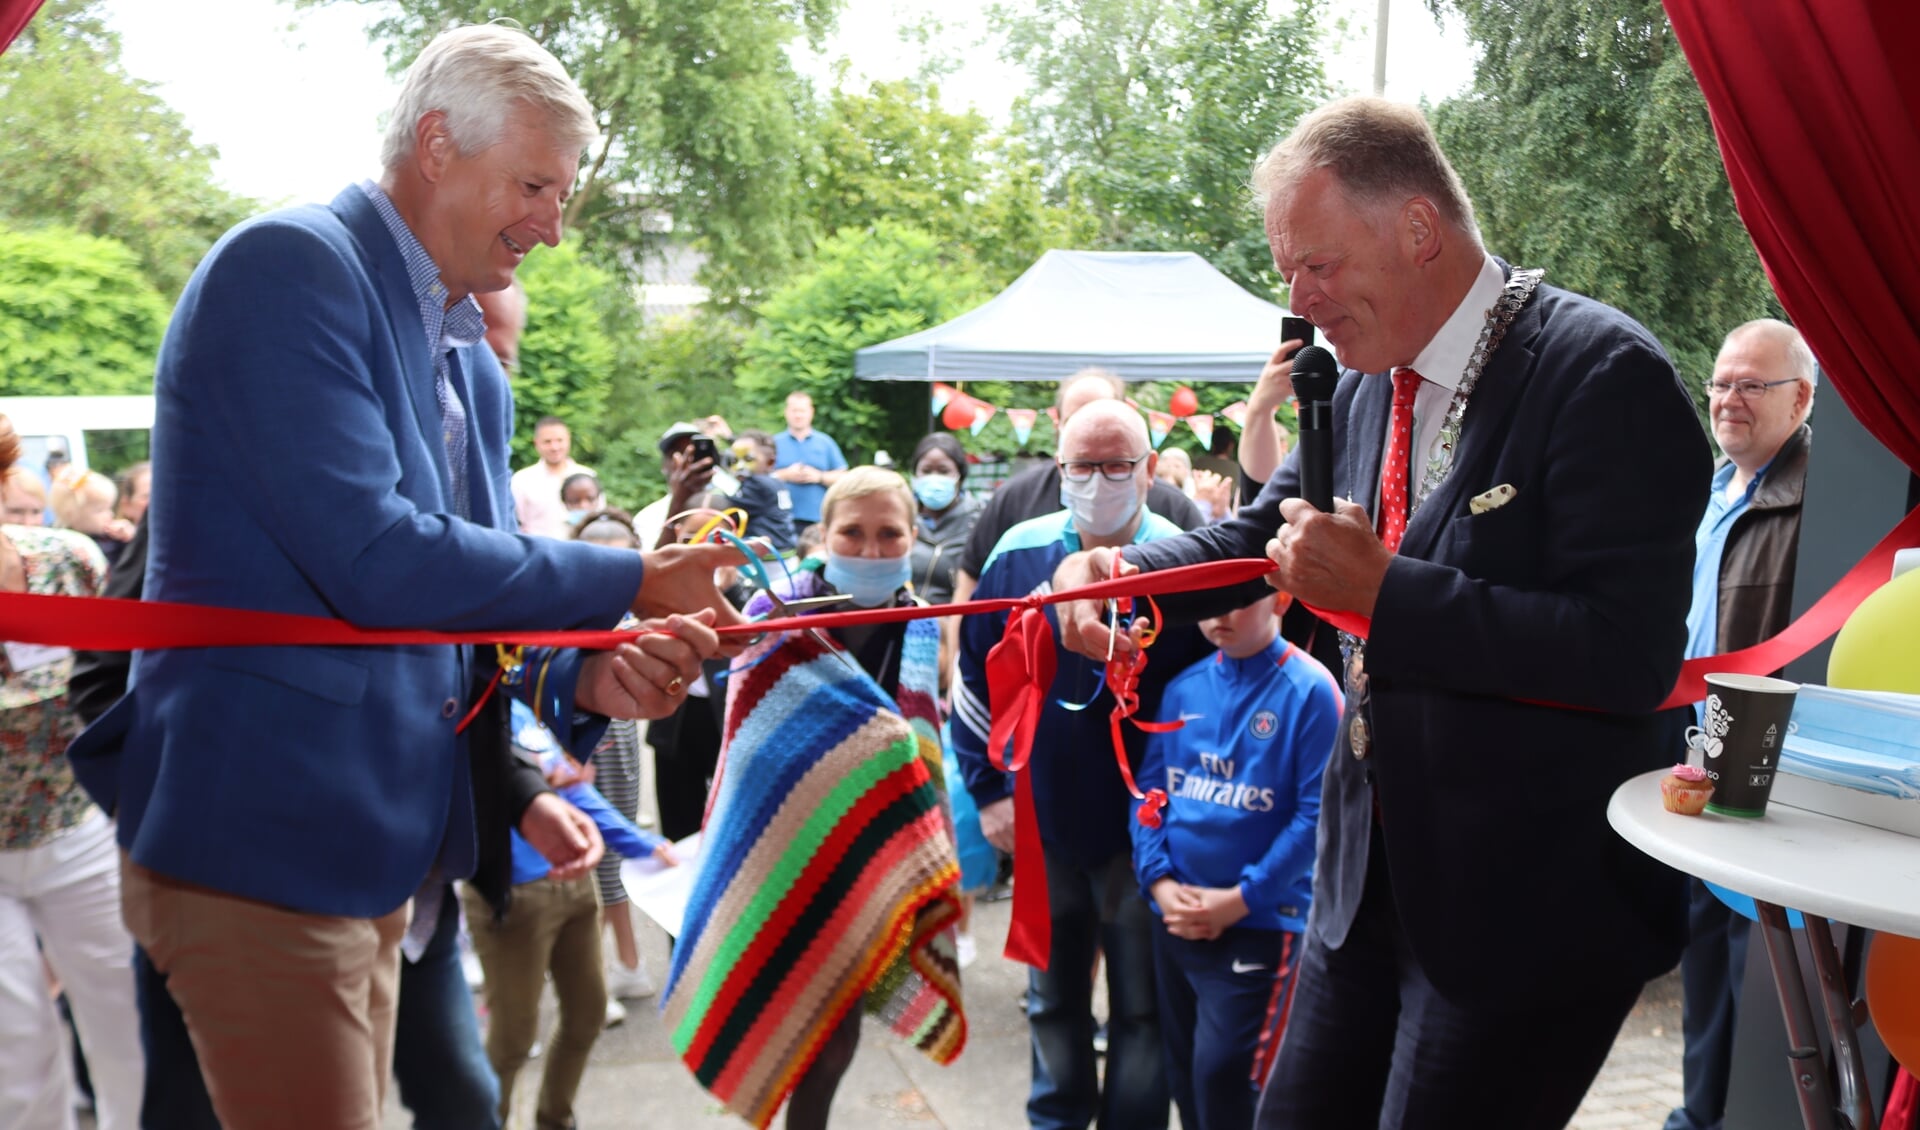 De opening van de speelgoedwinkel werd verricht door burgemeester Roel Cazemier van gemeente Krimpenerwaard en wethouder Anthon Timm van Krimpen aan den IJssel.